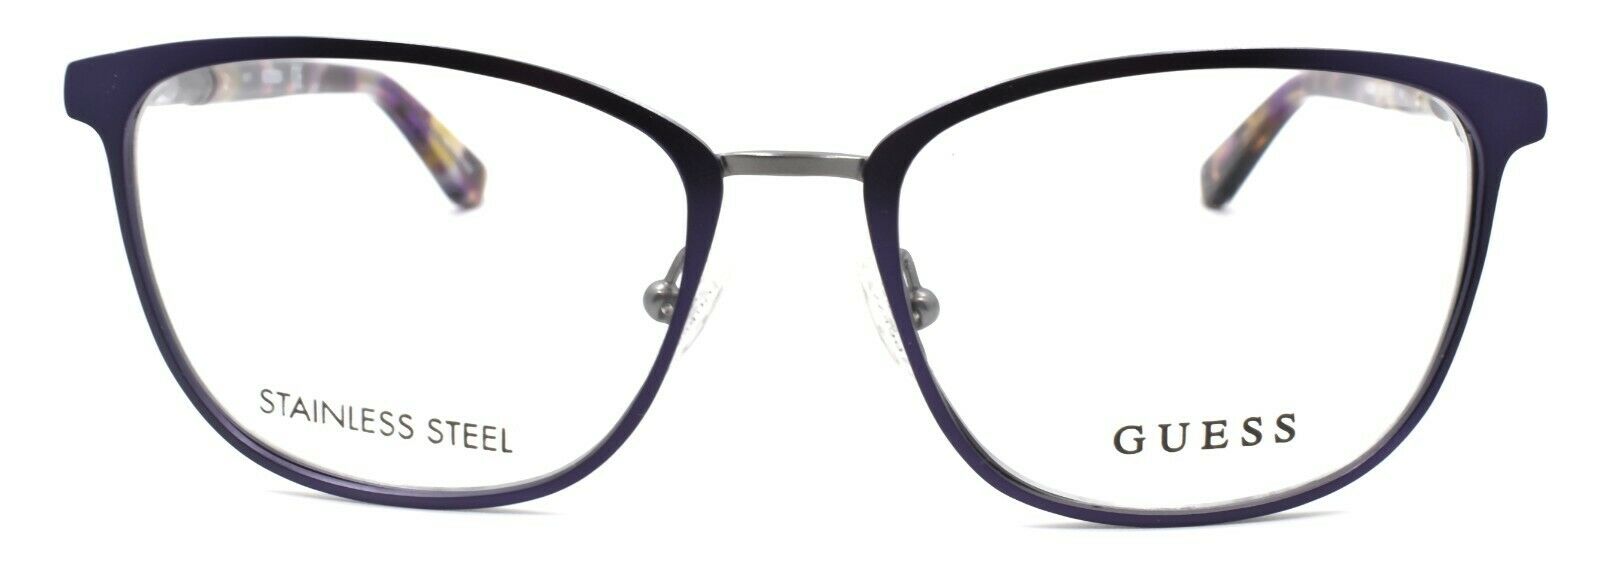 2-GUESS GU2659 082 Women's Eyeglasses Frames 51-17-140 Purple + CASE-664689921355-IKSpecs